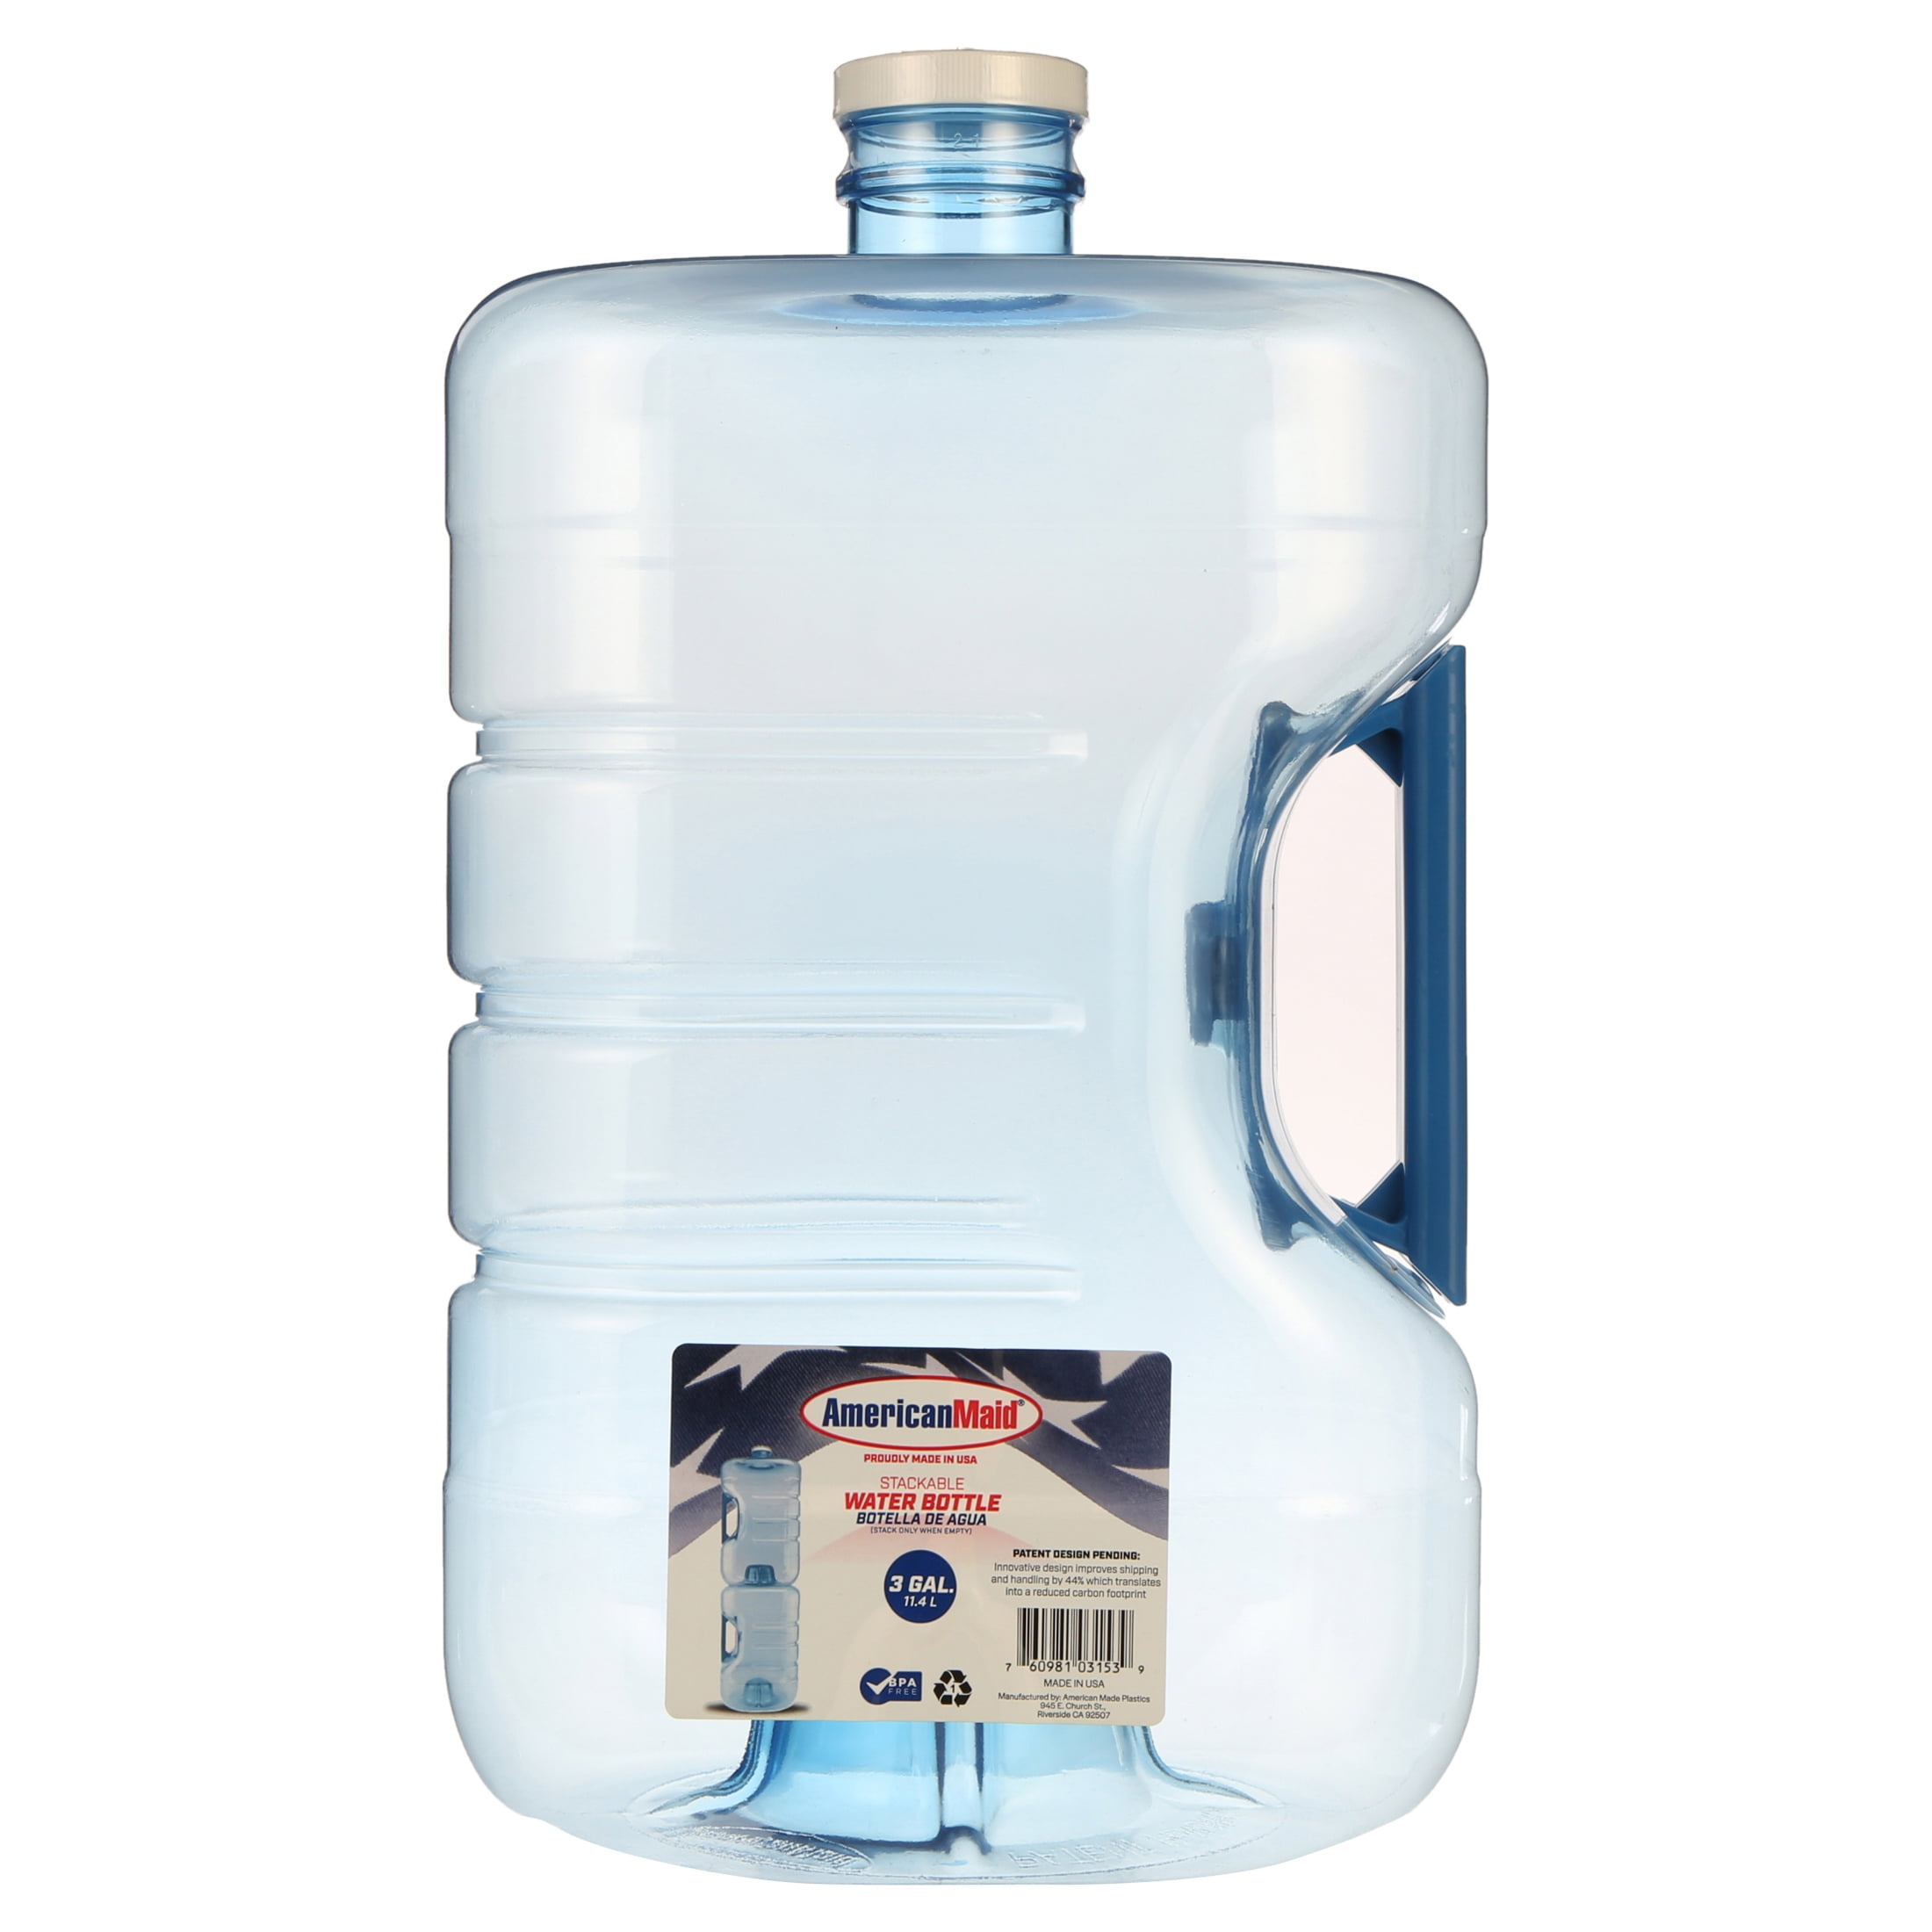 Bidón Eco-amigable de 20 Litros GAR Water (con agua)